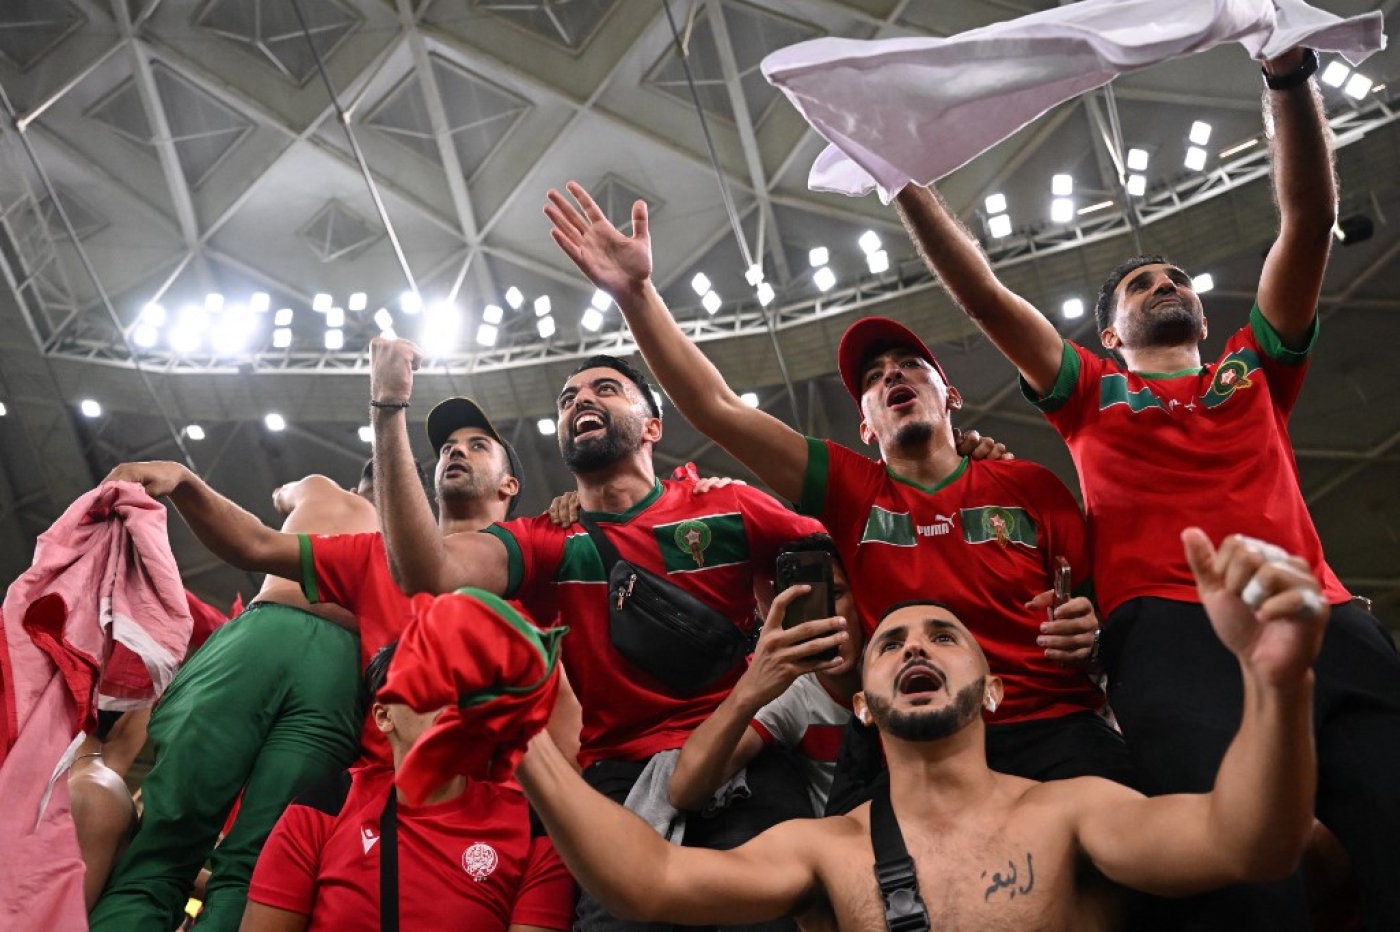 Les supporters marocains célèbrent la victoire avec leurs joueurs, au stade Al-Thumama de Doha, le 10 décembre 2022 (AFP/Kirill Kudryavtsev)